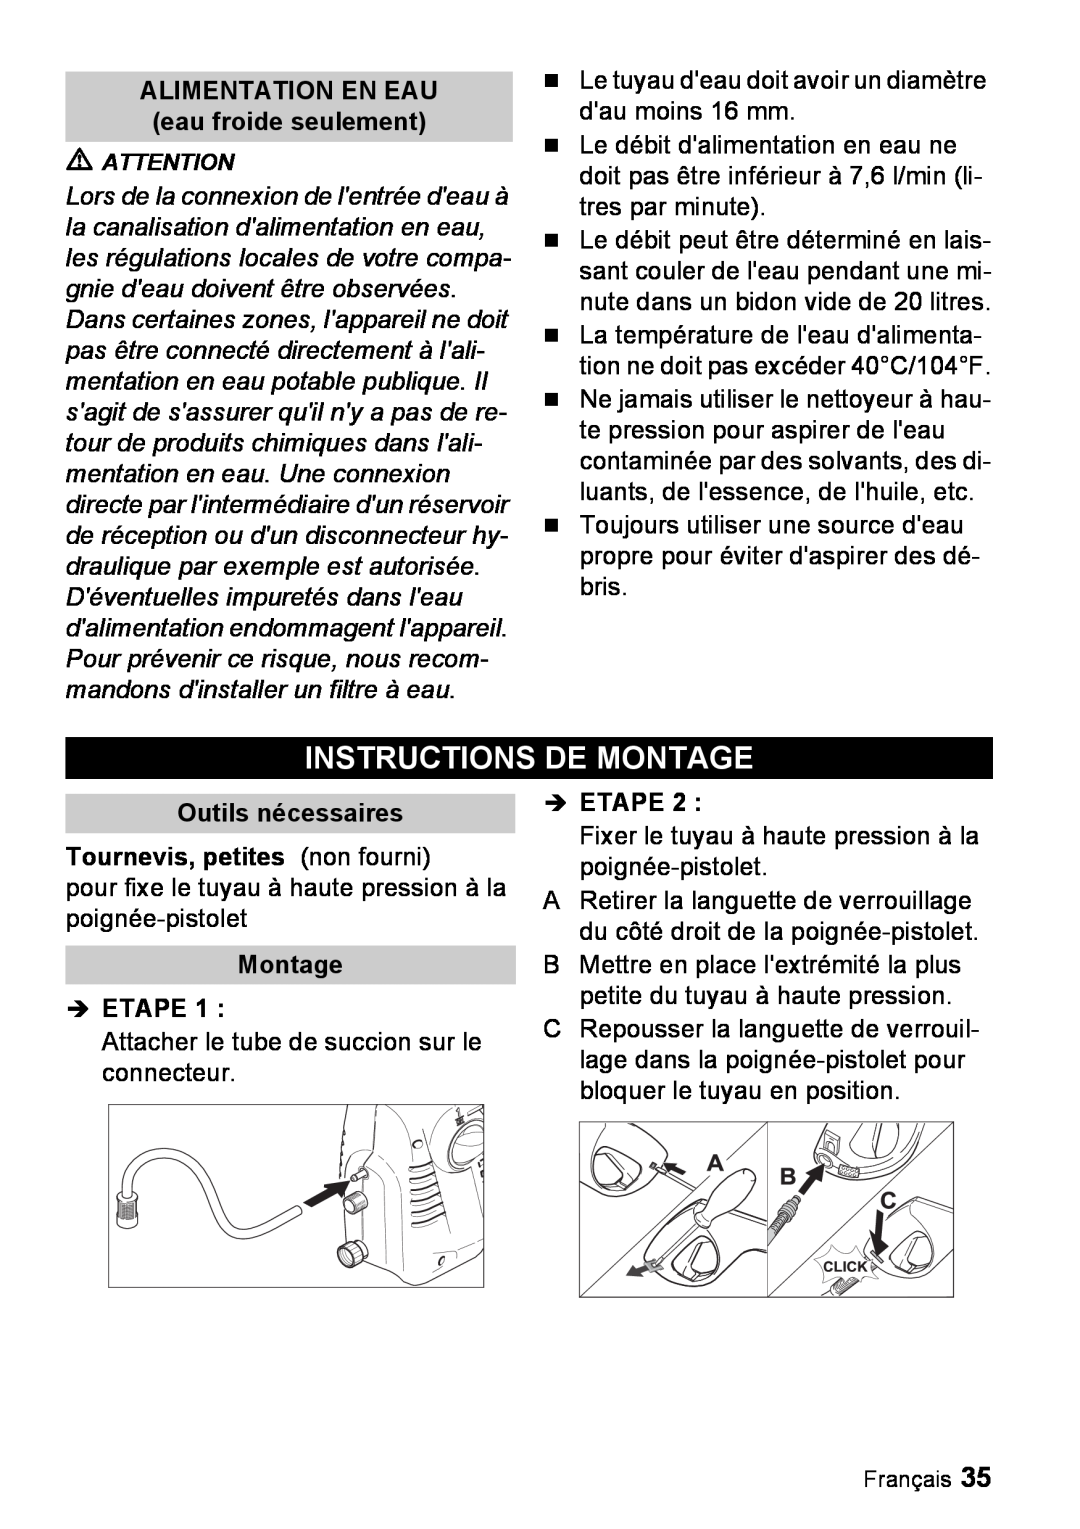 Karcher K 2.16 manual Instructions De Montage, ALIMENTATION EN EAU eau froide seulement, Montage Î ETAPE, Î Etape 